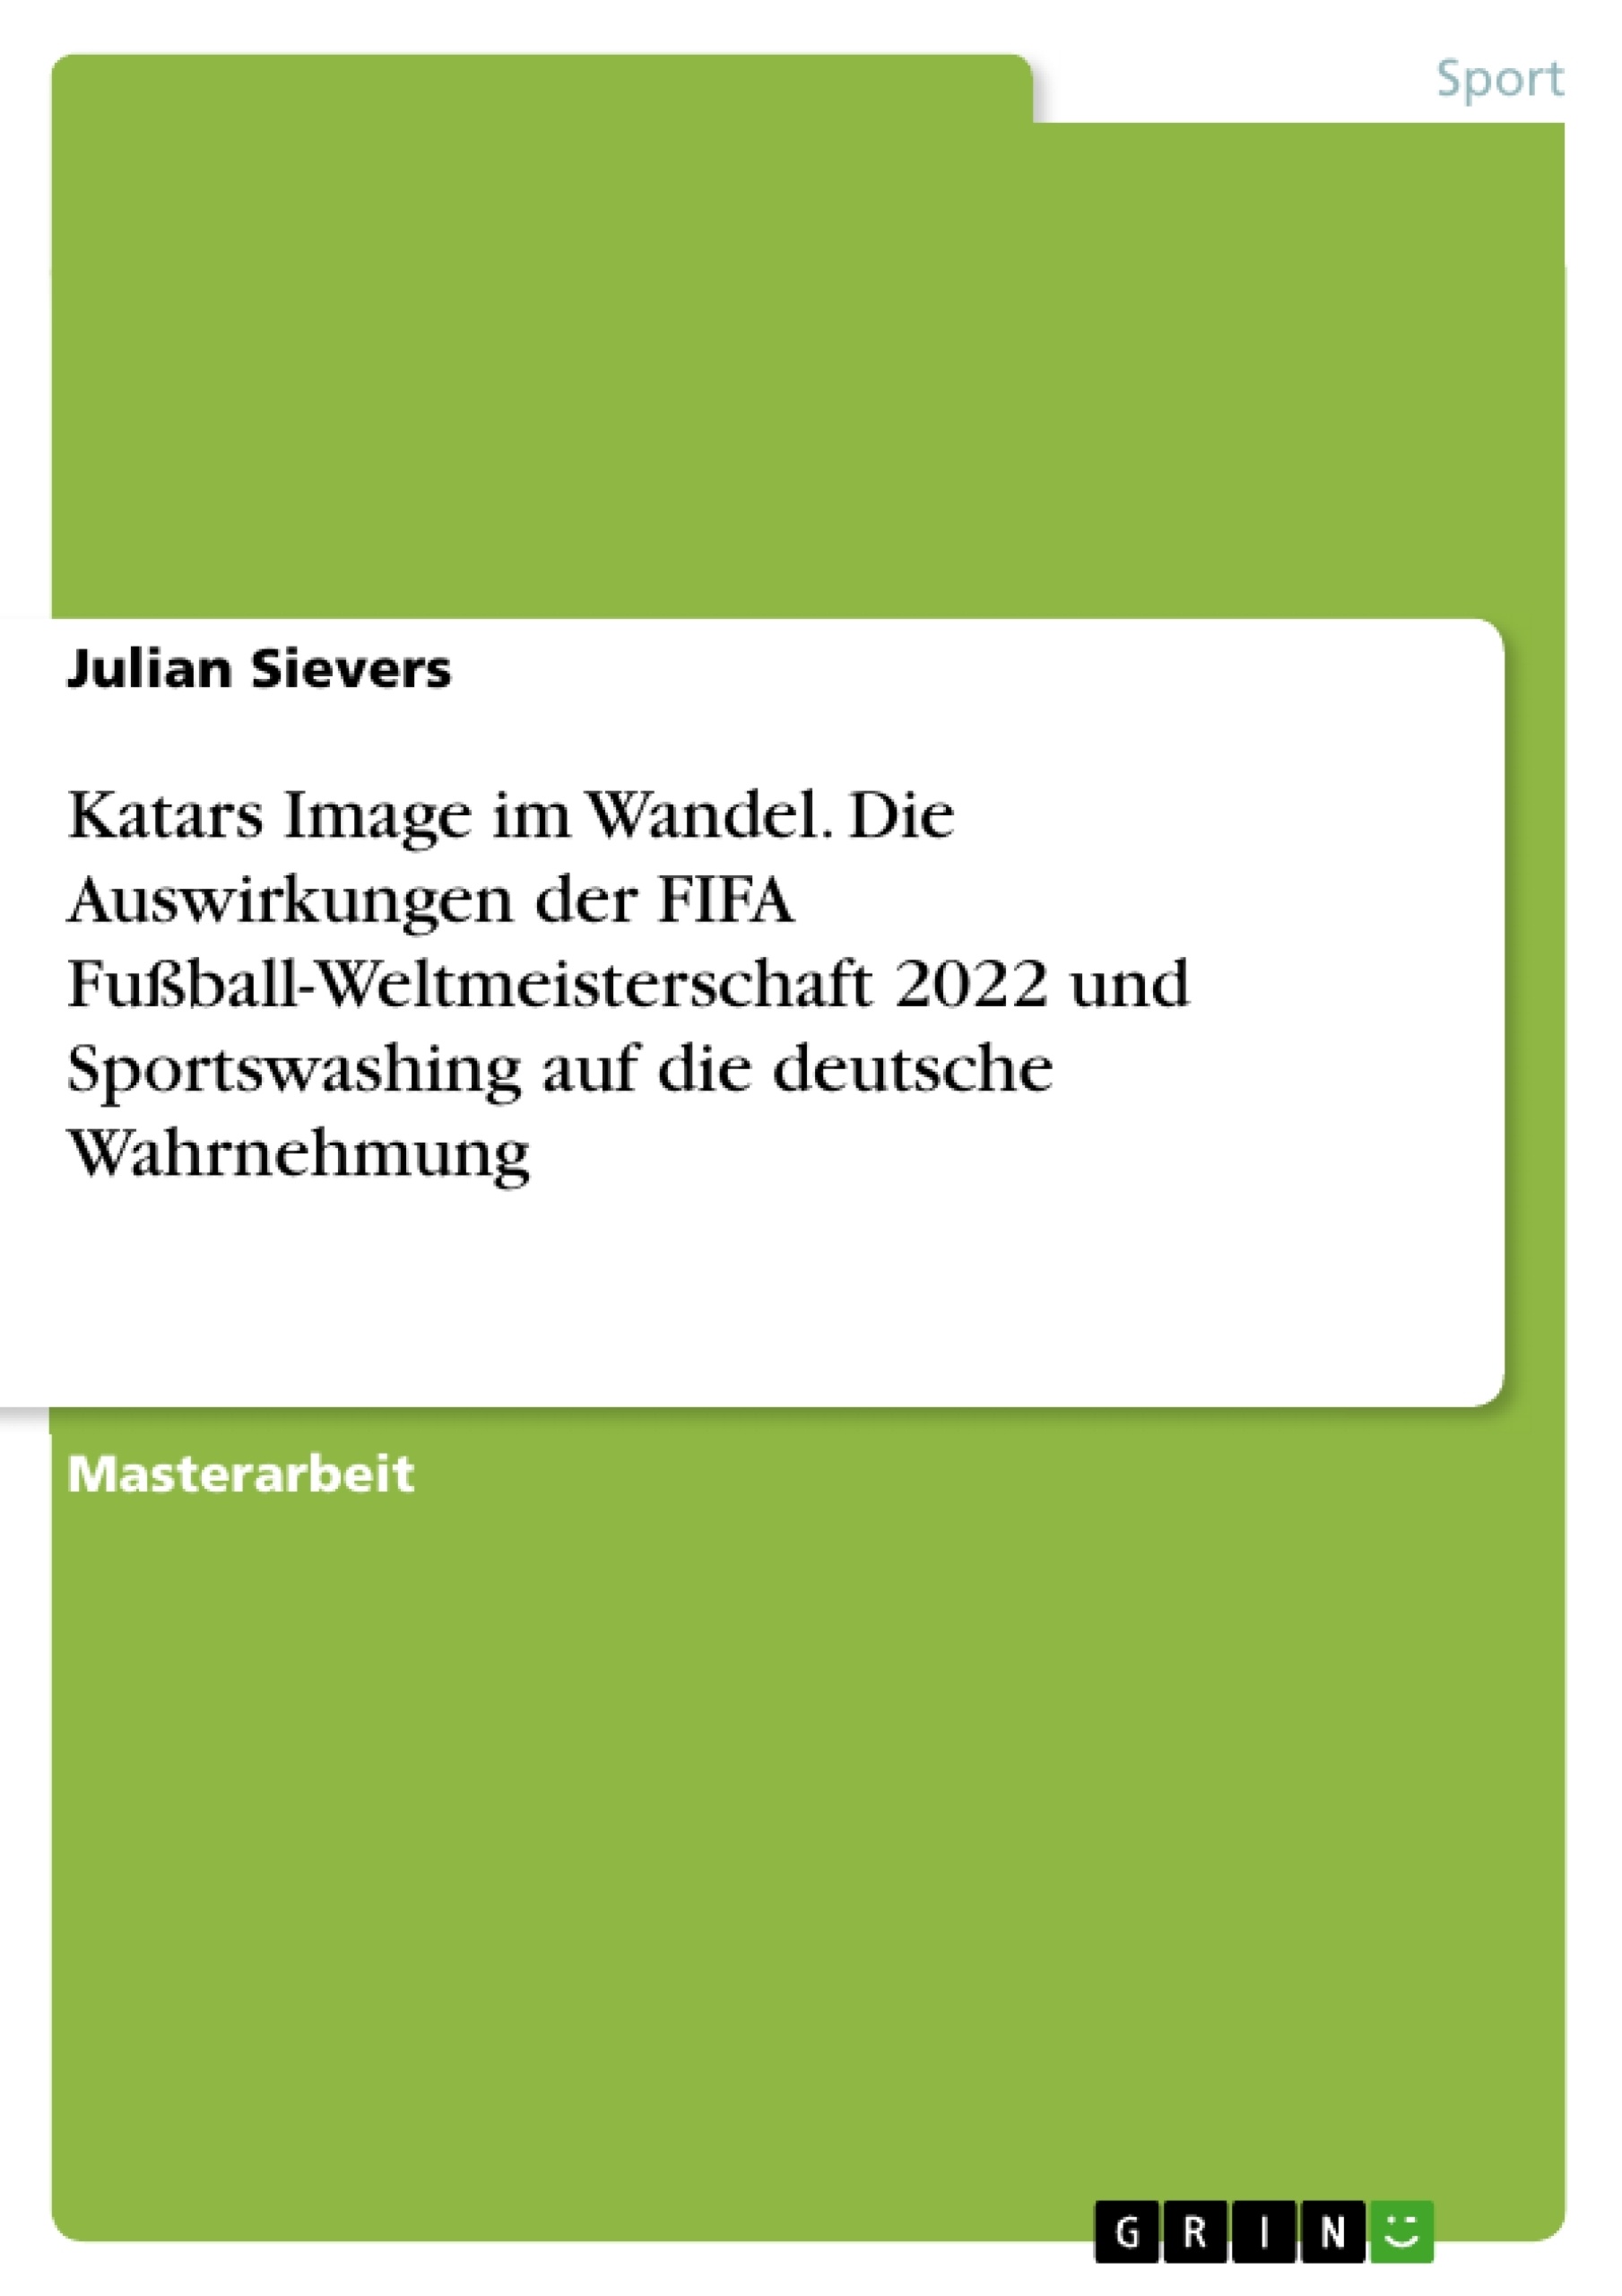 Titel: Katars Image im Wandel. Die Auswirkungen der FIFA Fußball-Weltmeisterschaft 2022 und Sportswashing auf die deutsche Wahrnehmung